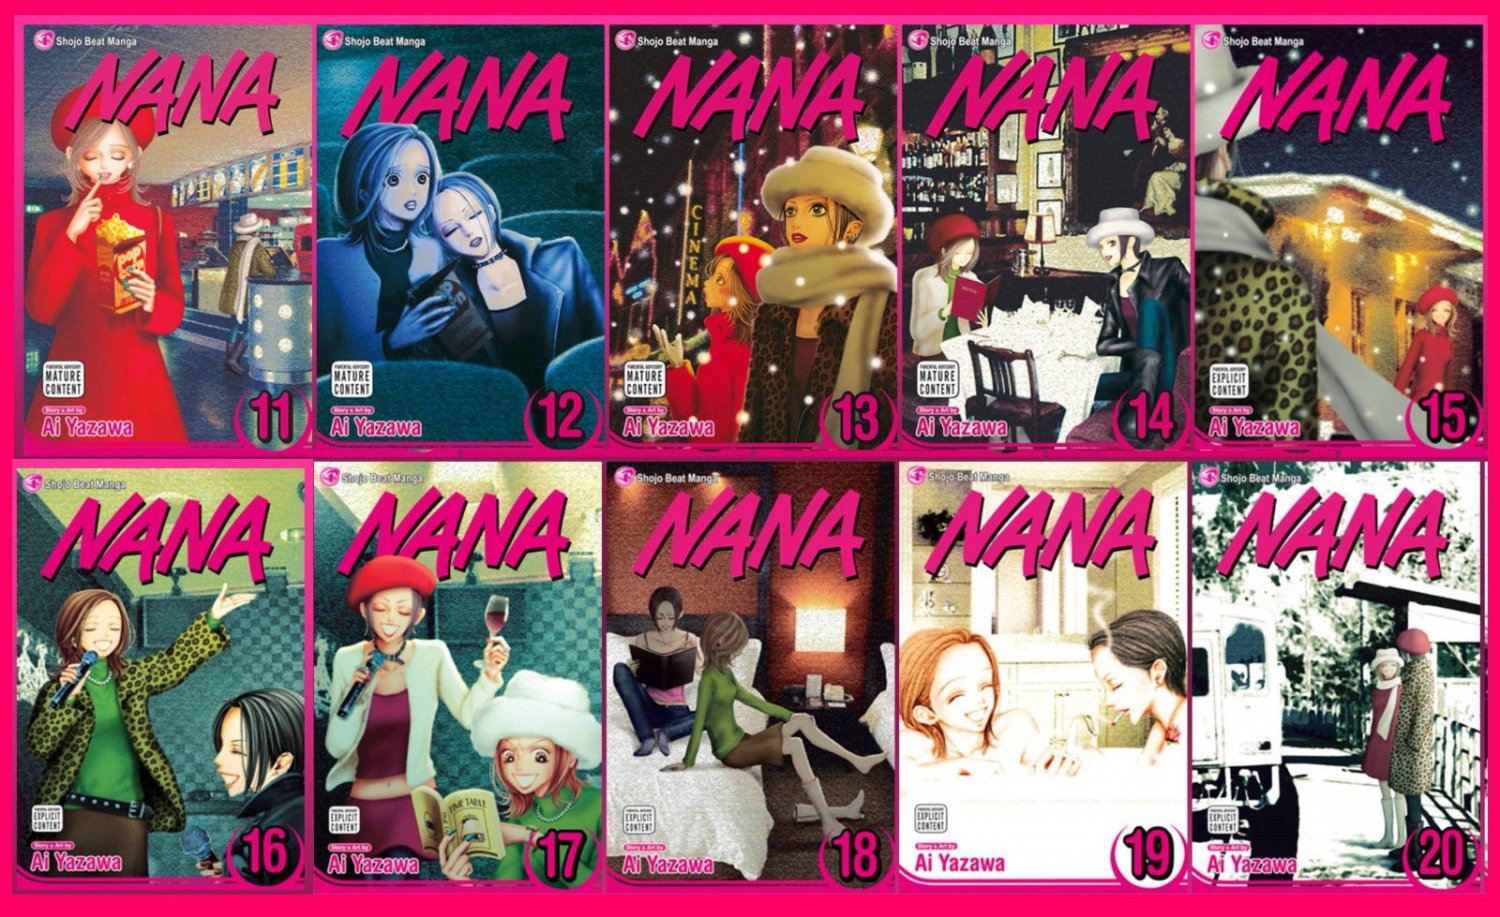 Nana EXPLICIT MANGA Series by Allison Wolfe and Ai Yazawa Set Books 11-20! 